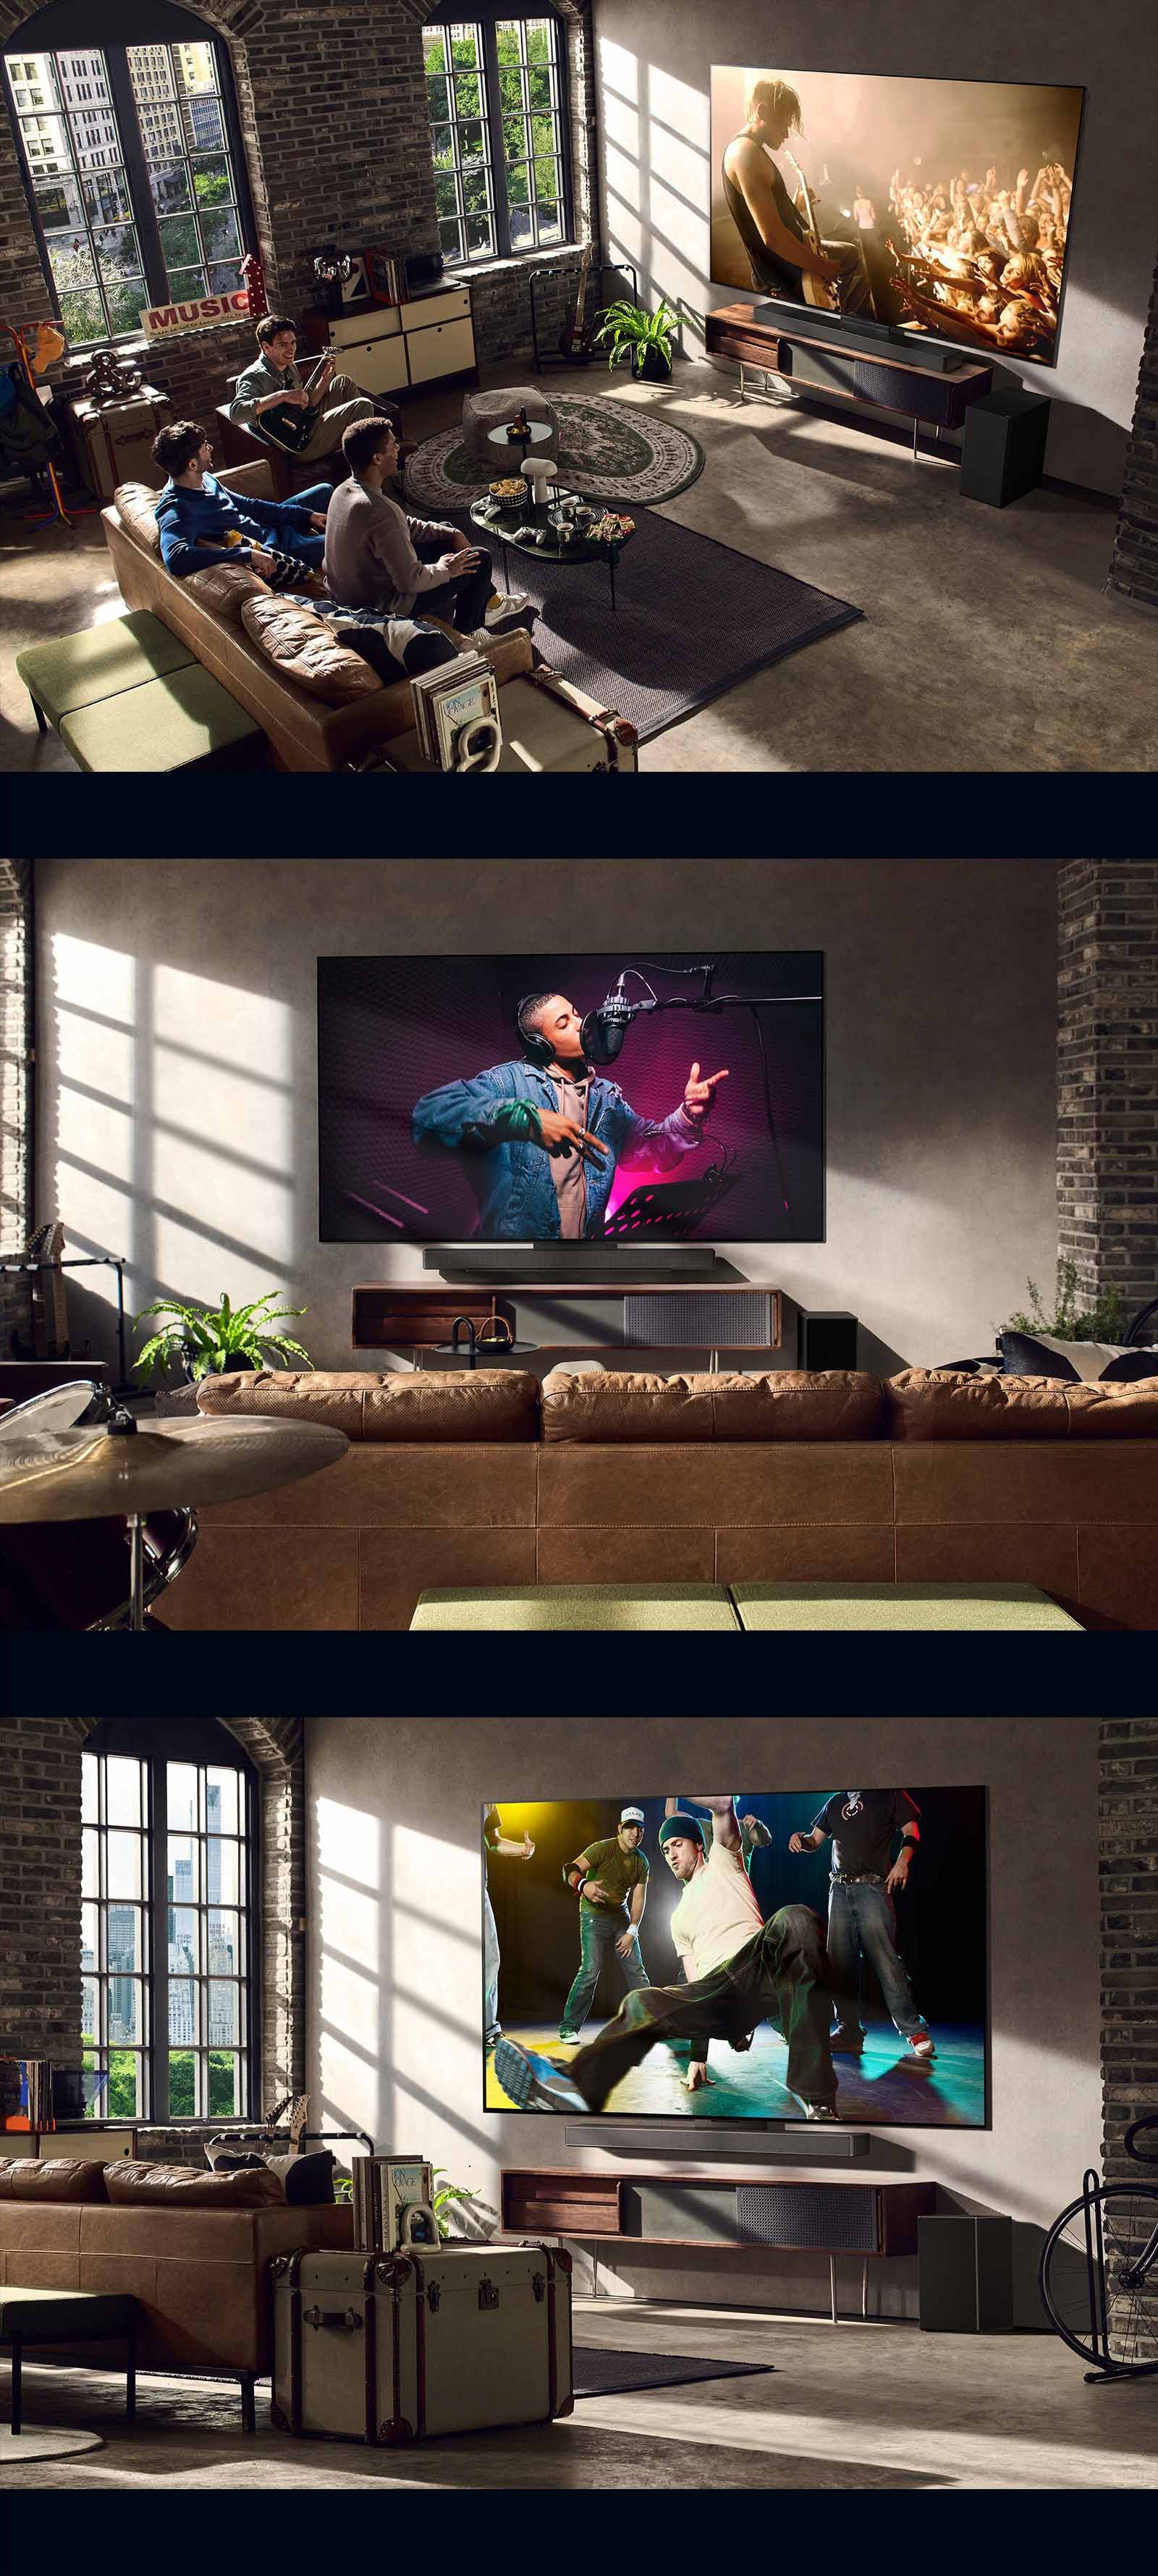 Tri slike životnog stila. Odozgo prema dolje: tri muškarca uživaju u videozapisu koncerta u dnevnom boravku. LG TV nalazi se na zidu i prikazuje scenu snimanja glazbe, a LG TV na zidu prikazuje scenu break dancea u dijagonalnom prikazu.